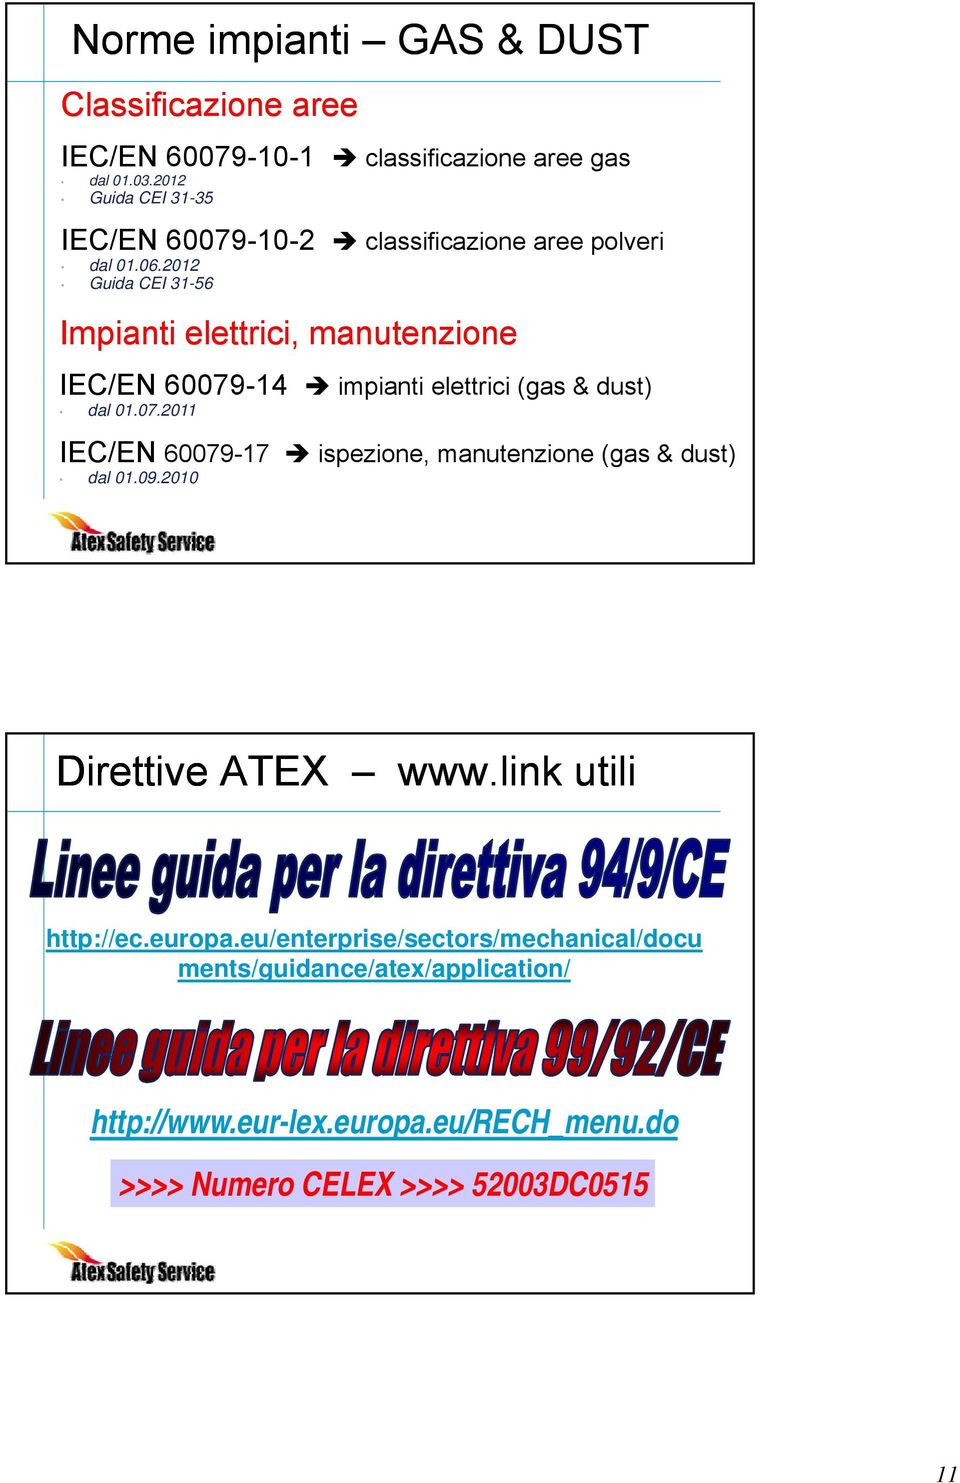 2012 Guida CEI 31-56 Impianti elettrici, manutenzione IEC/EN 60079-14 impianti i i elettrici i (gas & dust) dal 01.07.2011 IEC/EN 60079-17 ispezione, manutenzione (gas & dust) dal 01.